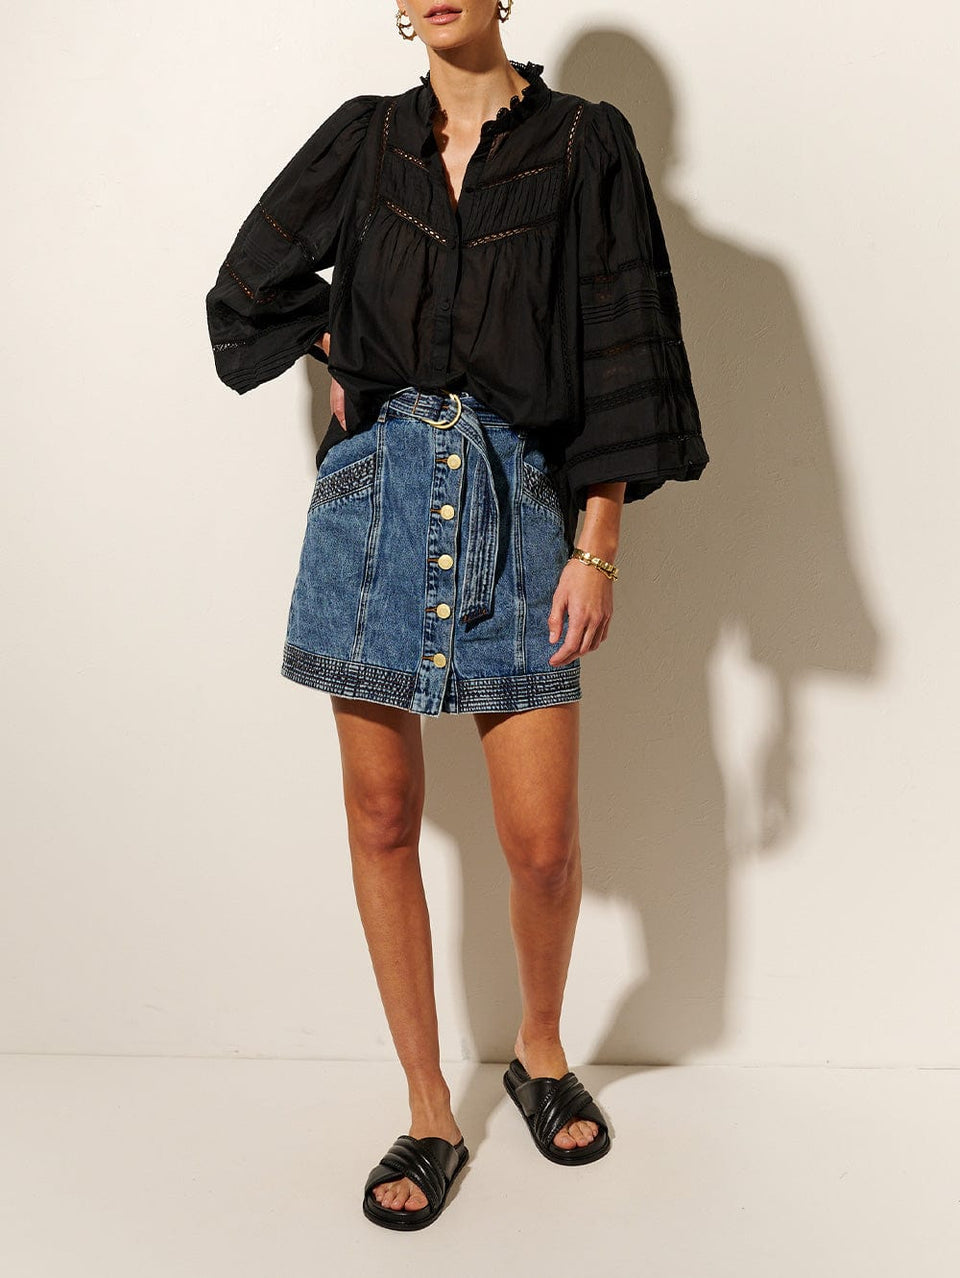 KIVARI Delia Blouse | Model wears Black Blouse